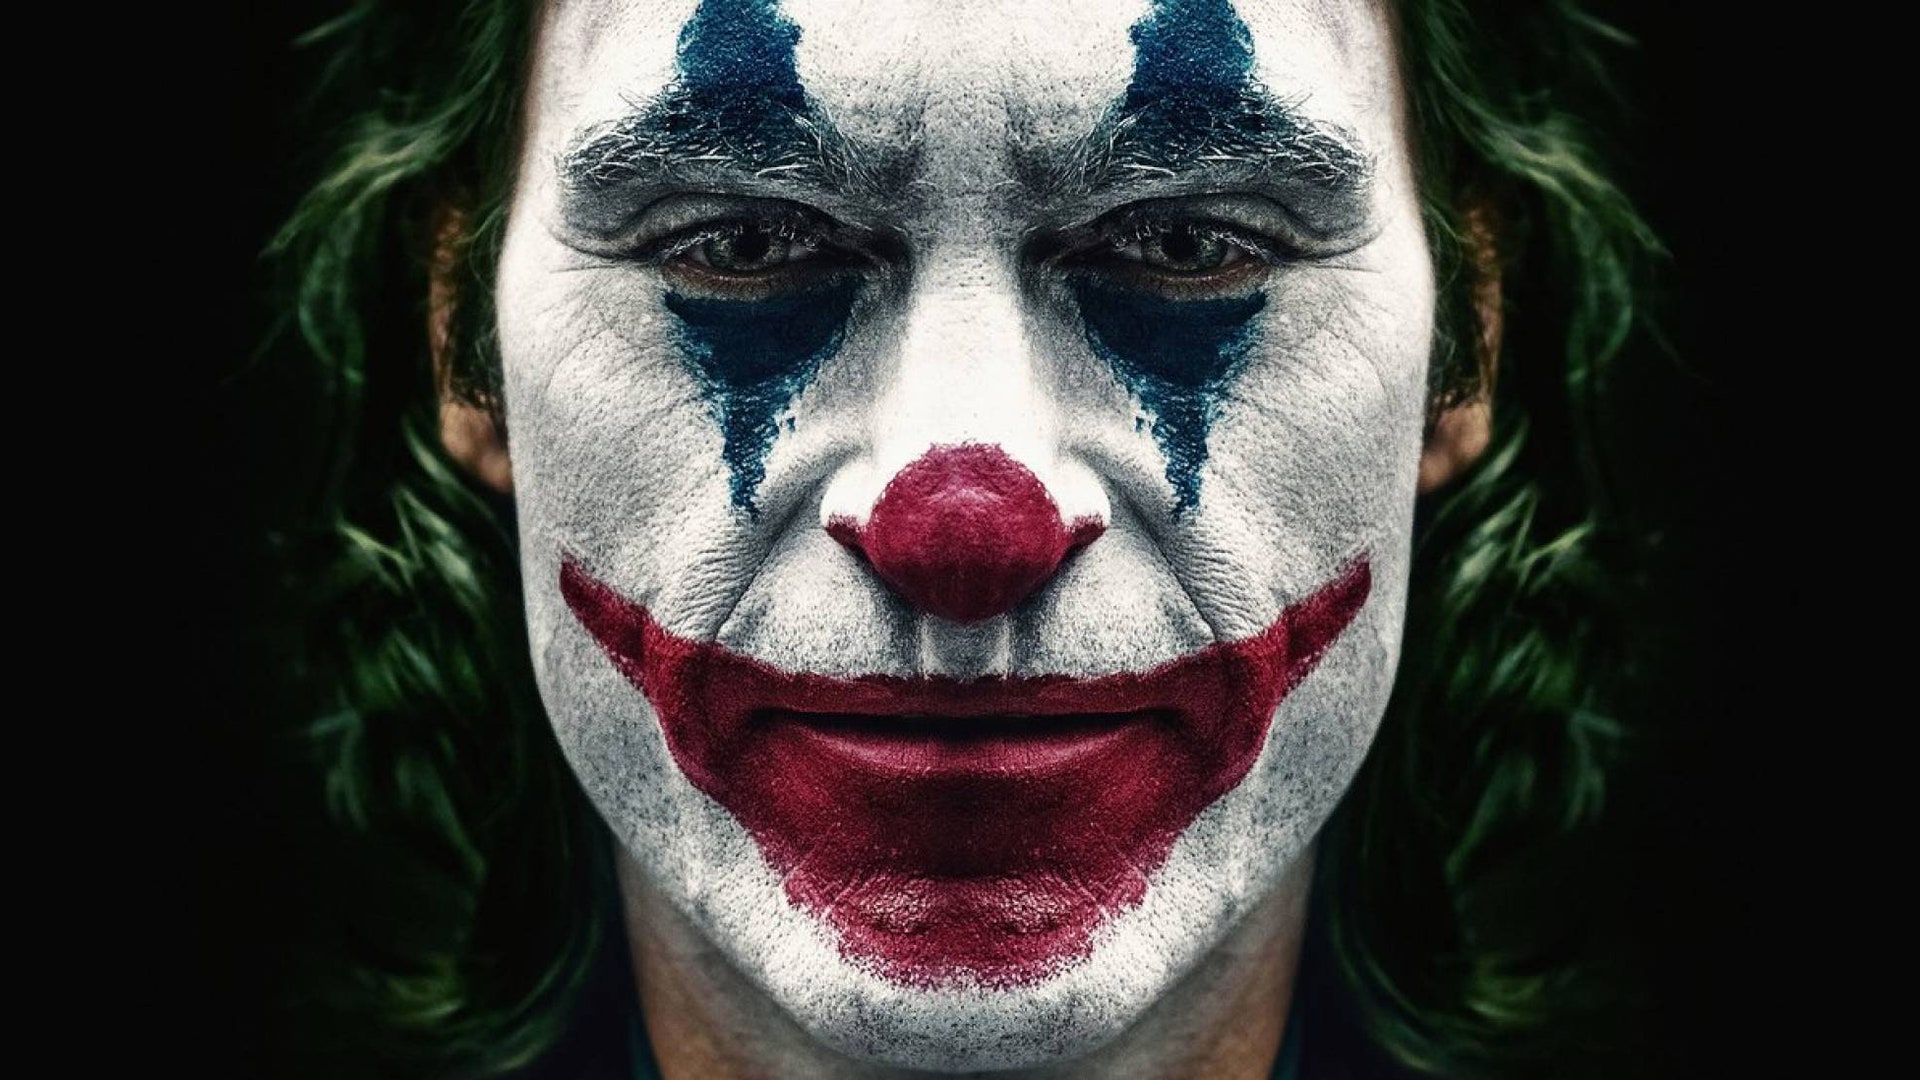  Que siempre sí habrá secuela de ‘Joker’ cuentan los rumores